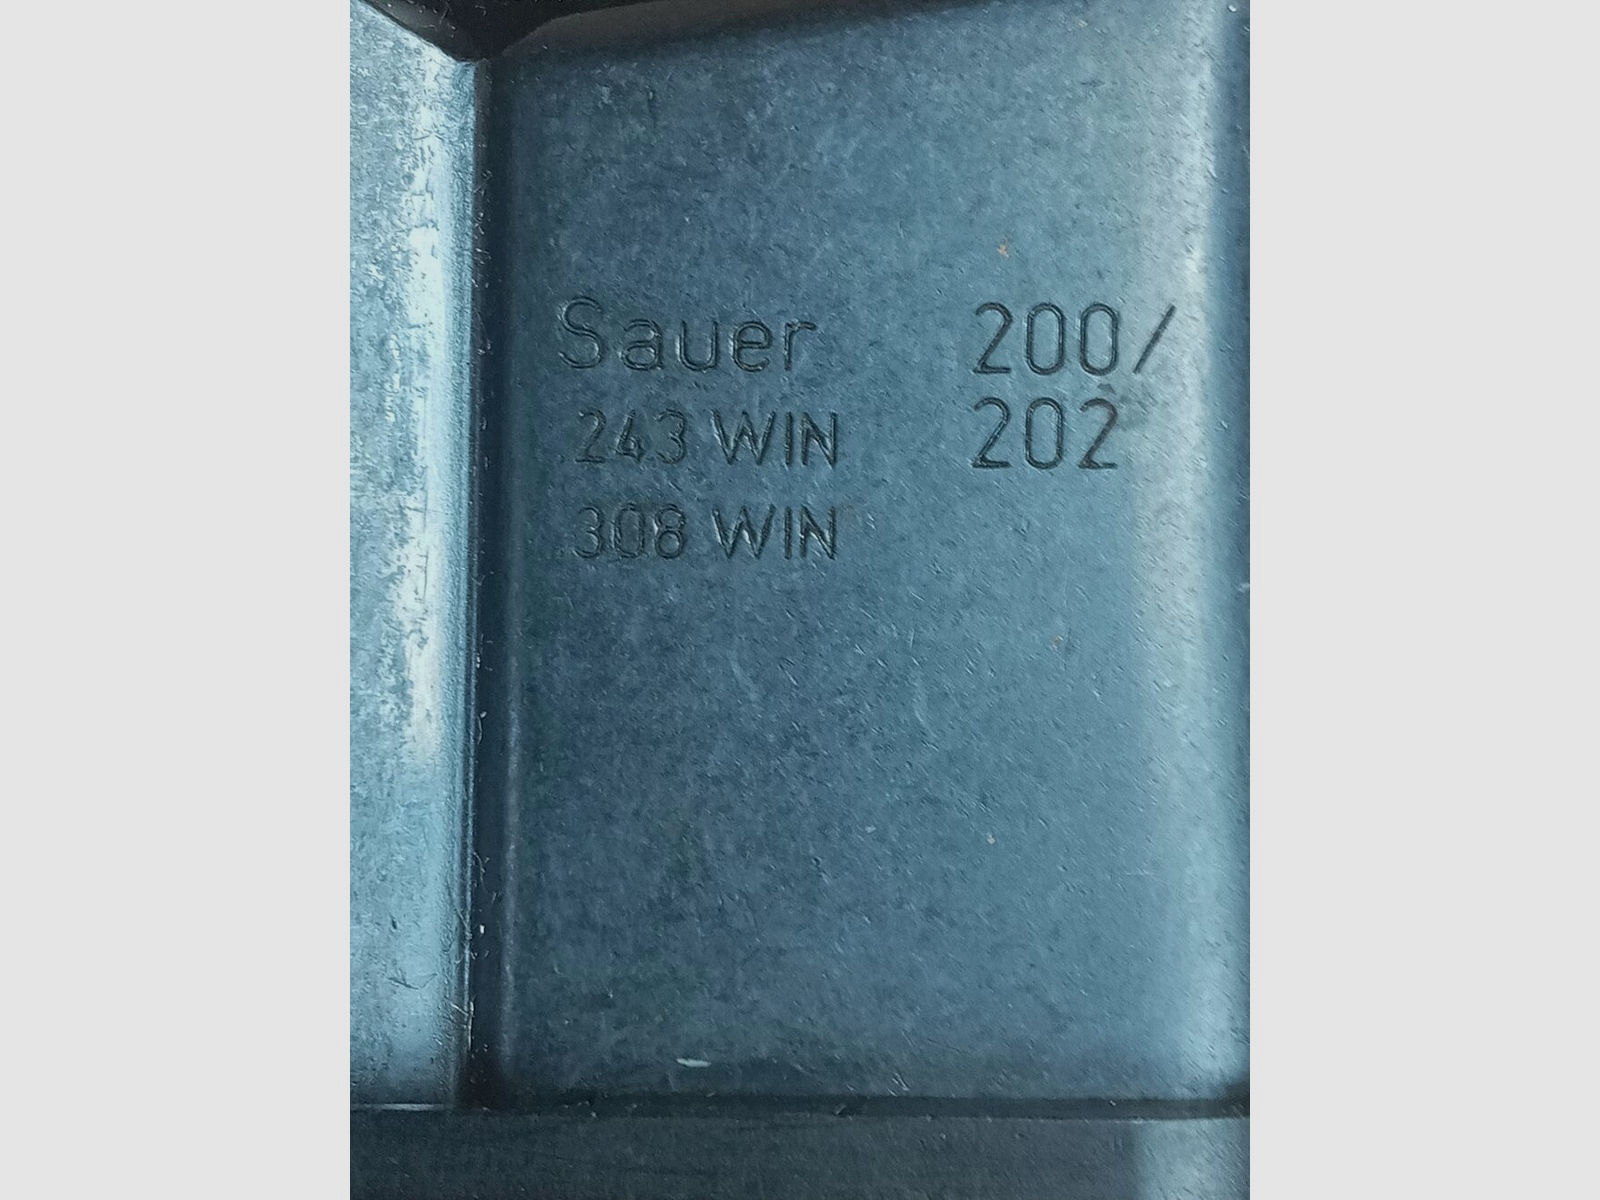 Sauer & Sohn, Eckernförde	 Modell  200/202